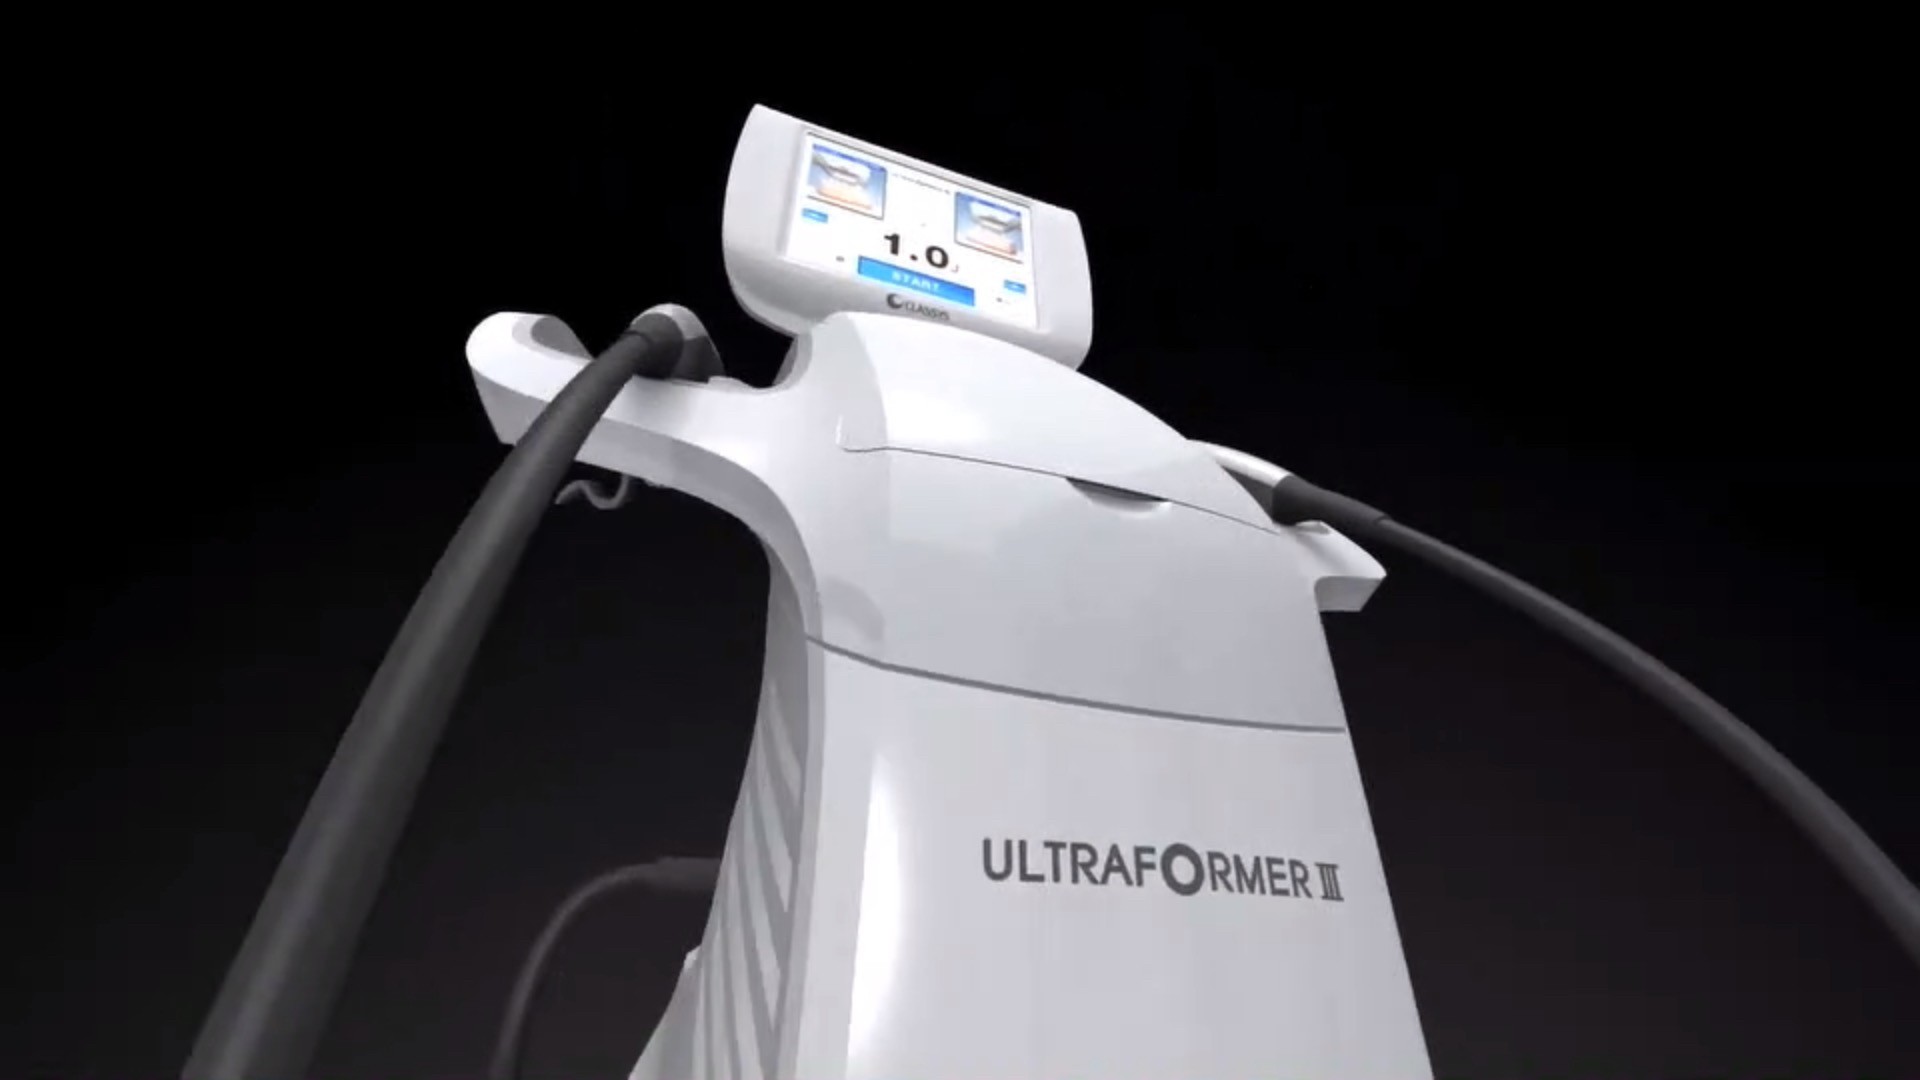 แนะนำเทคนิคดูแล ยกกระชับผิว: Ultraformer III นวัตกรรมคลื่นเสียงยกกระชับ ลดริ้วรอย กระชับผิว ดูแลหลุมสิวโดยไม่ต้องผ่าตัด